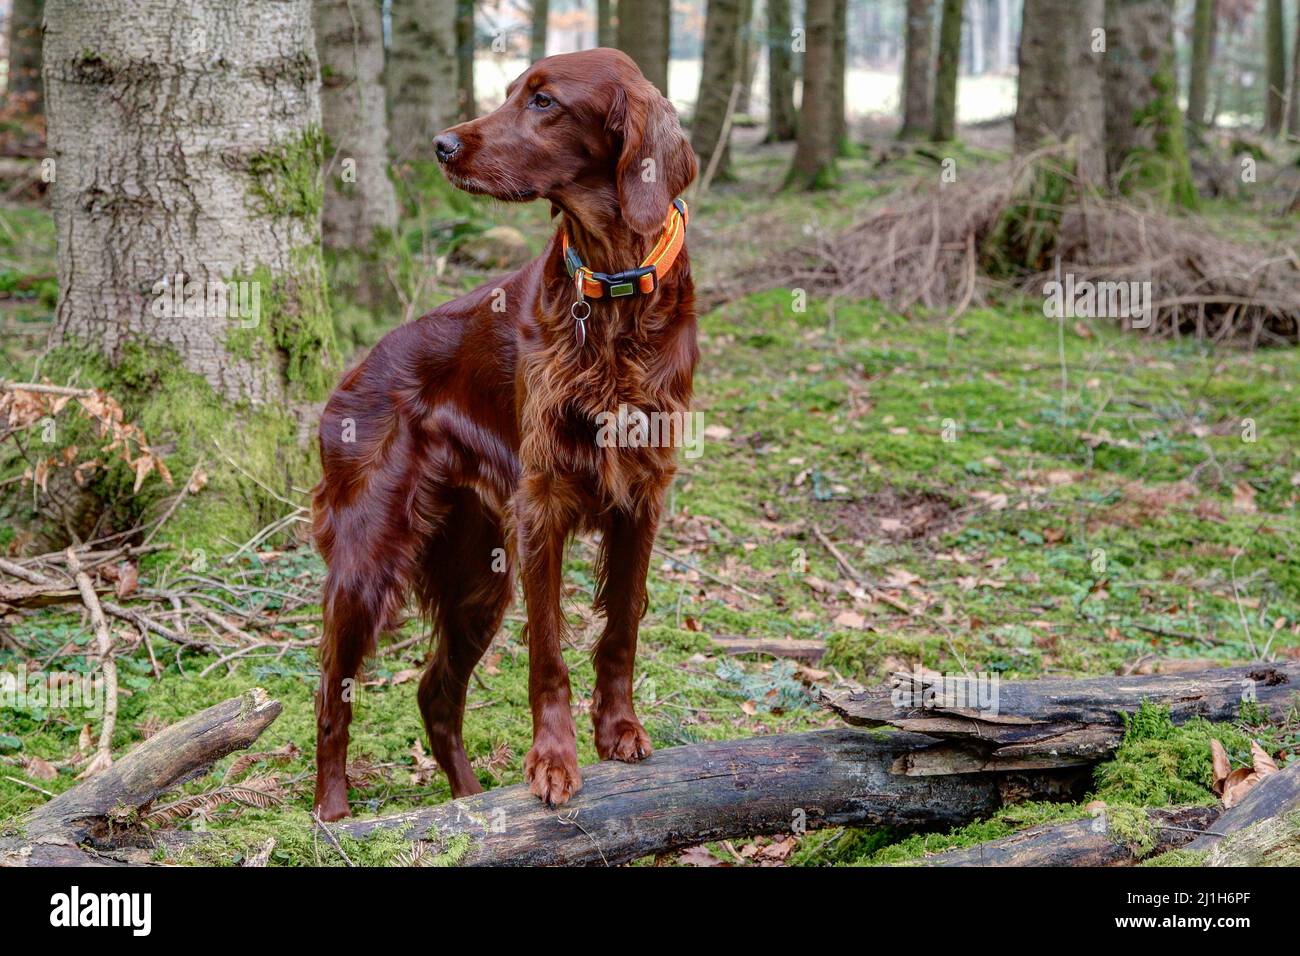 Der Irish Setter, einer der schönsten Jagdhunde, steht mit seinen Vorderpfoten auf einem Baumstamm im Wald und beobachtet sorgfältig das Jagdgebiet. Stockfoto